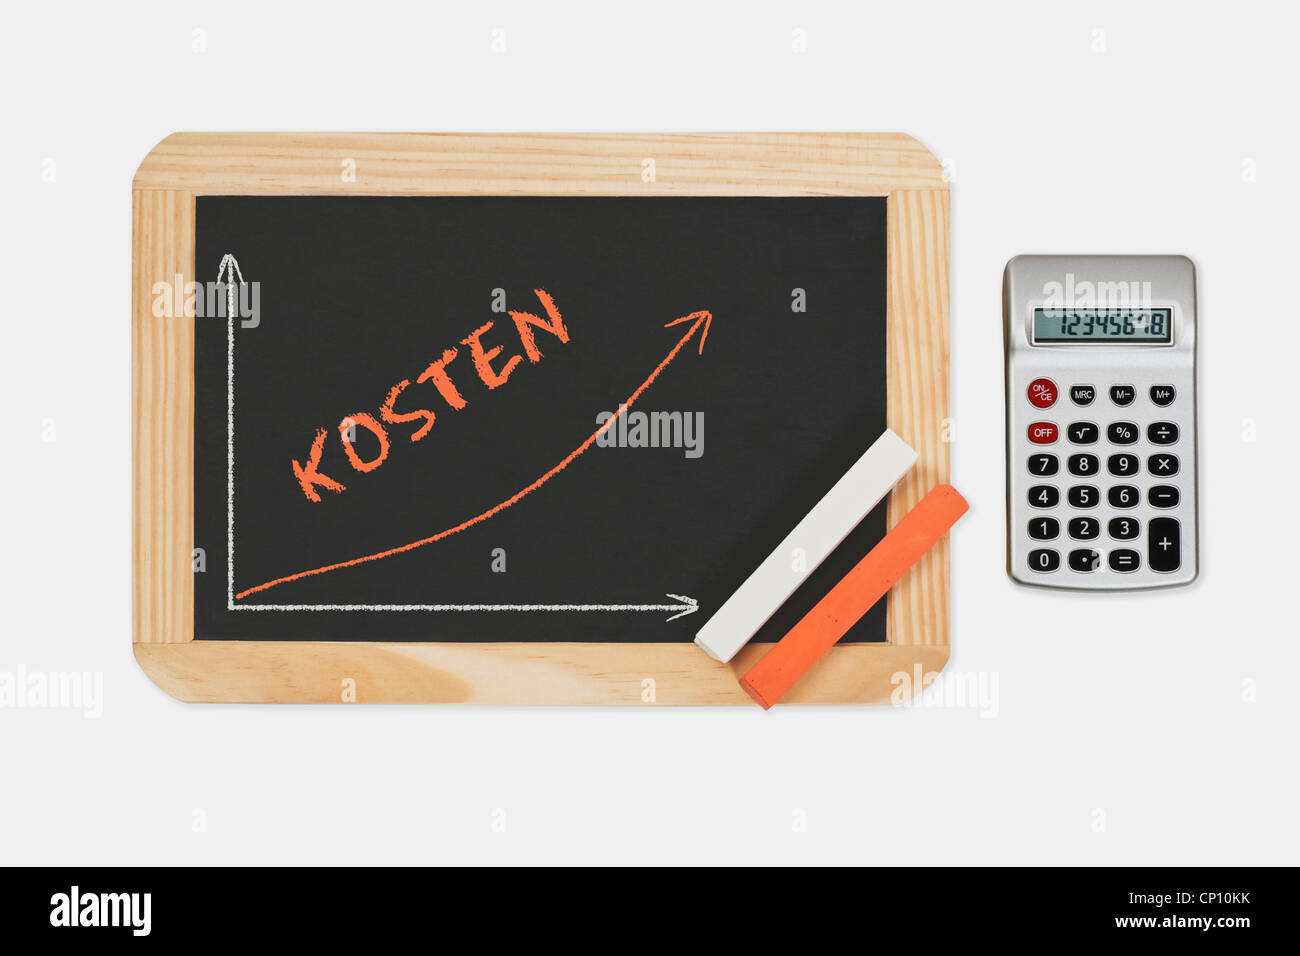 Una lavagna. Un grafico con una curva crescente su questo. Sulla lavagna è la parola Kosten (costi), calcolatrice sul lato destro. Foto Stock